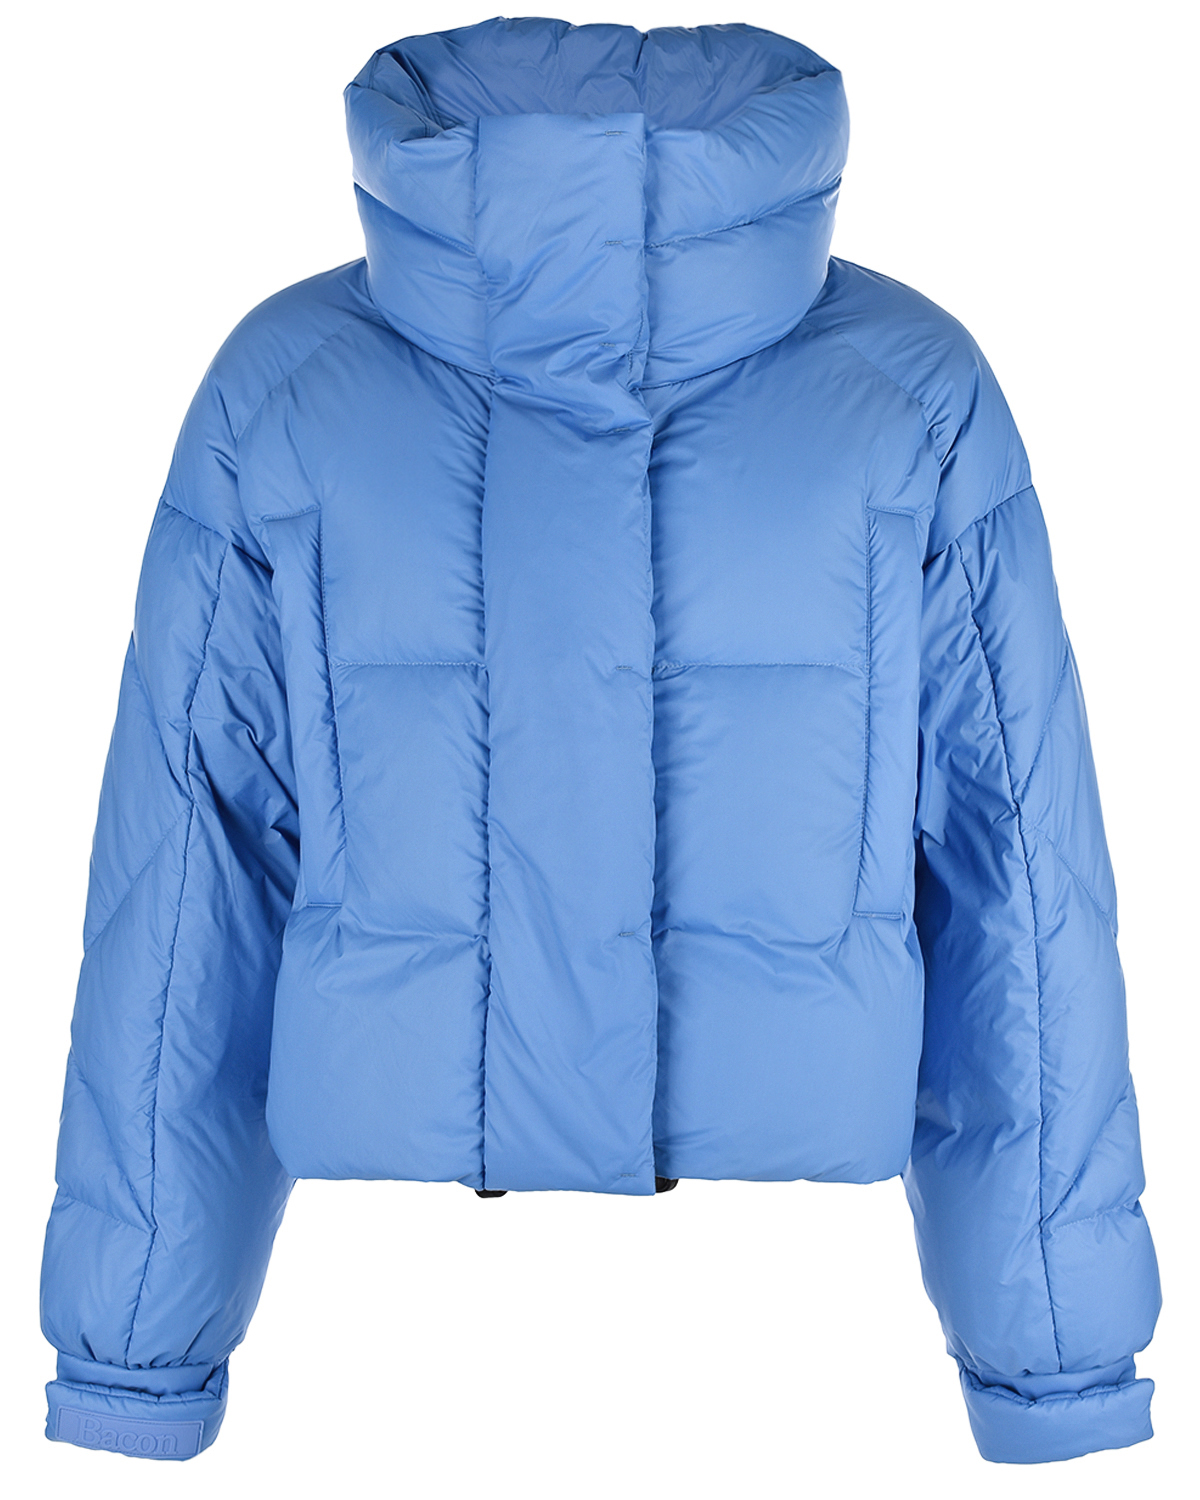 Укороченная синяя куртка Bacon, размер 38, цвет синий - фото 1